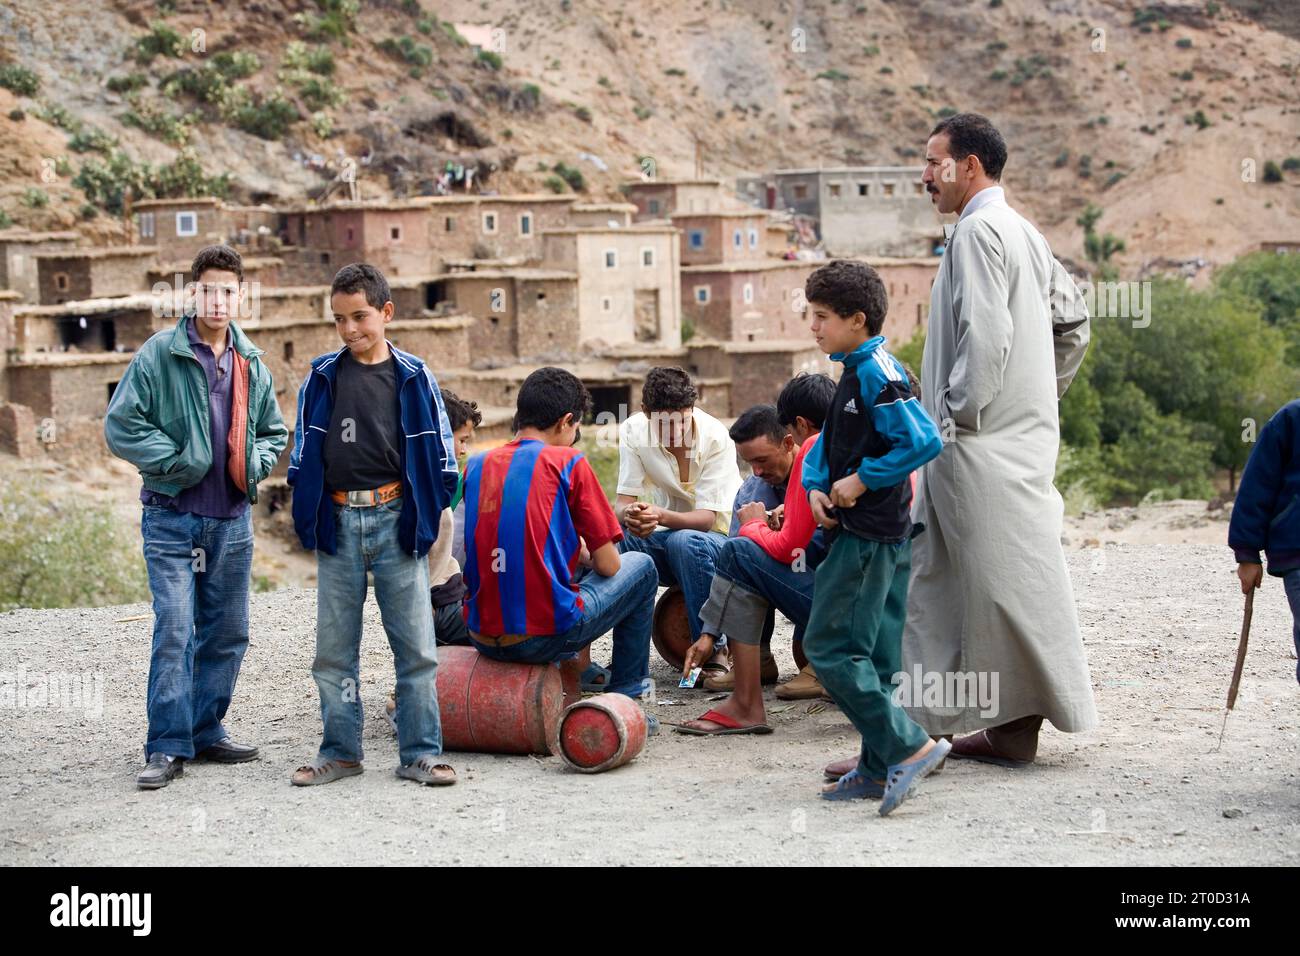 Adolescents jouant aux cartes dans un village dans les montagnes de l'Atlas, Maroc. Banque D'Images